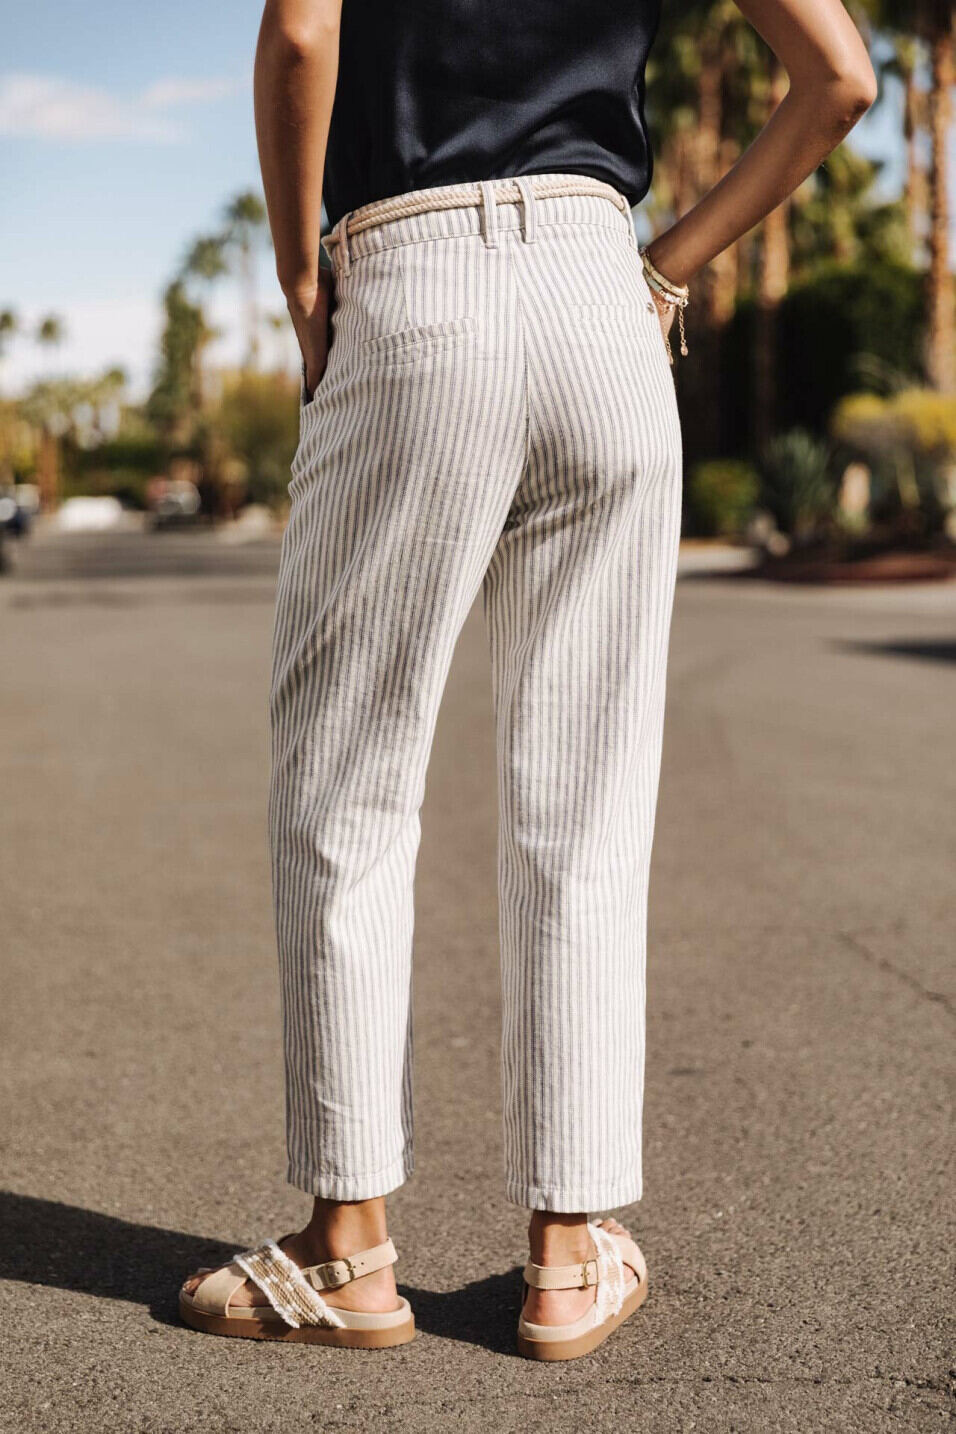 Belted striped pants Woman Samara Varda Original | Freeman T. Porter